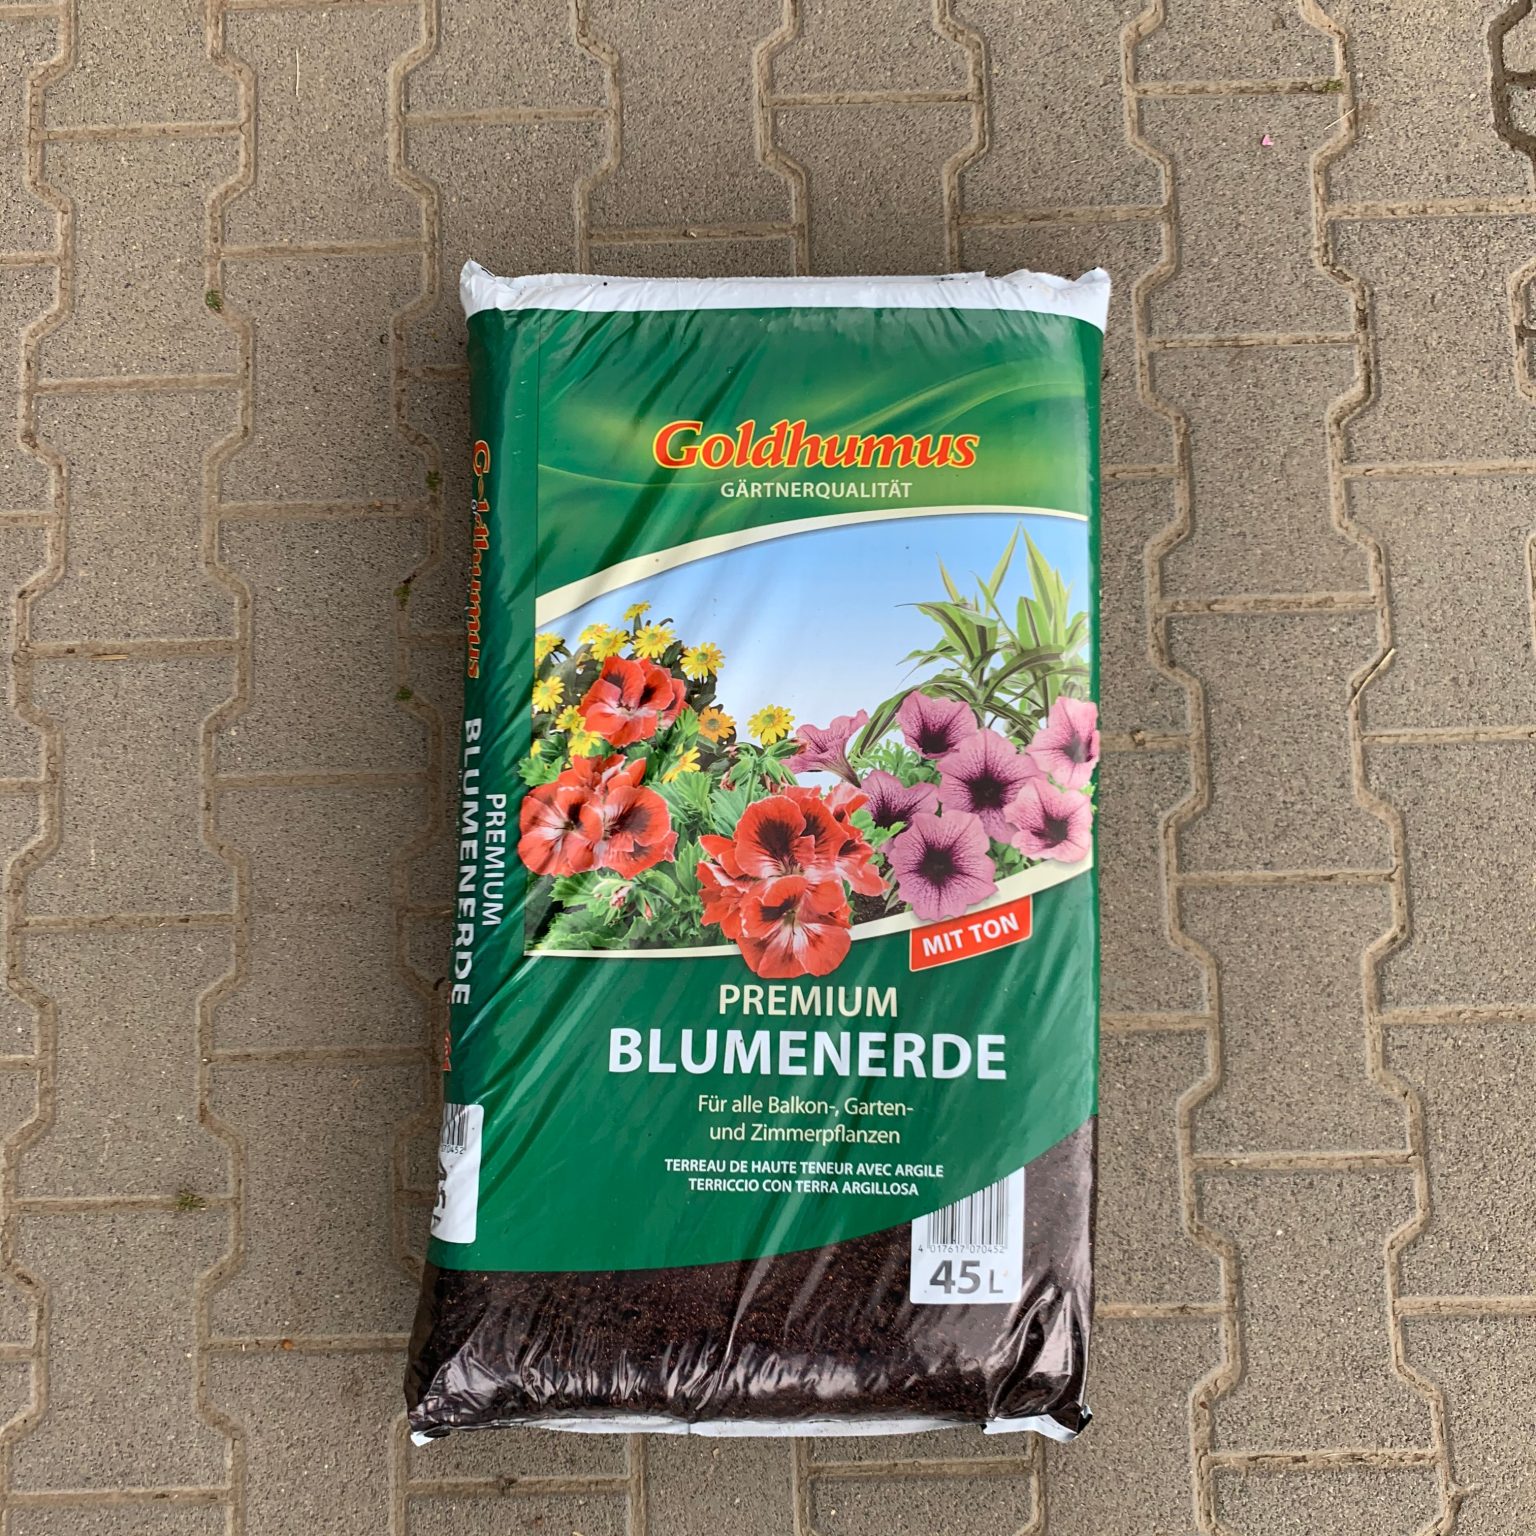 Goldhumus Premium Blumenerde - Raab Rosen